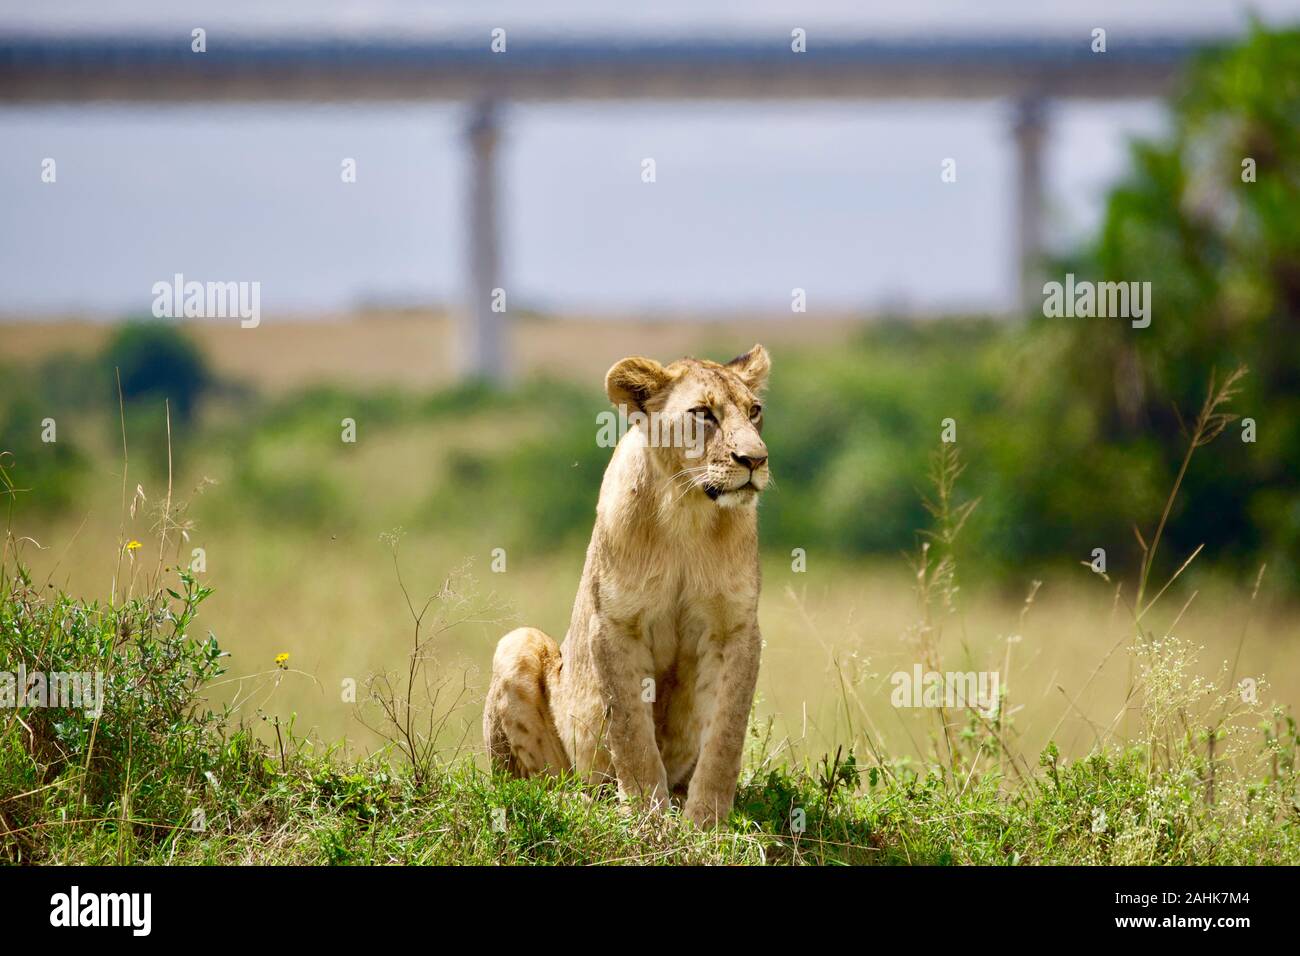 lion pride in Nairobi national park Stock Photo